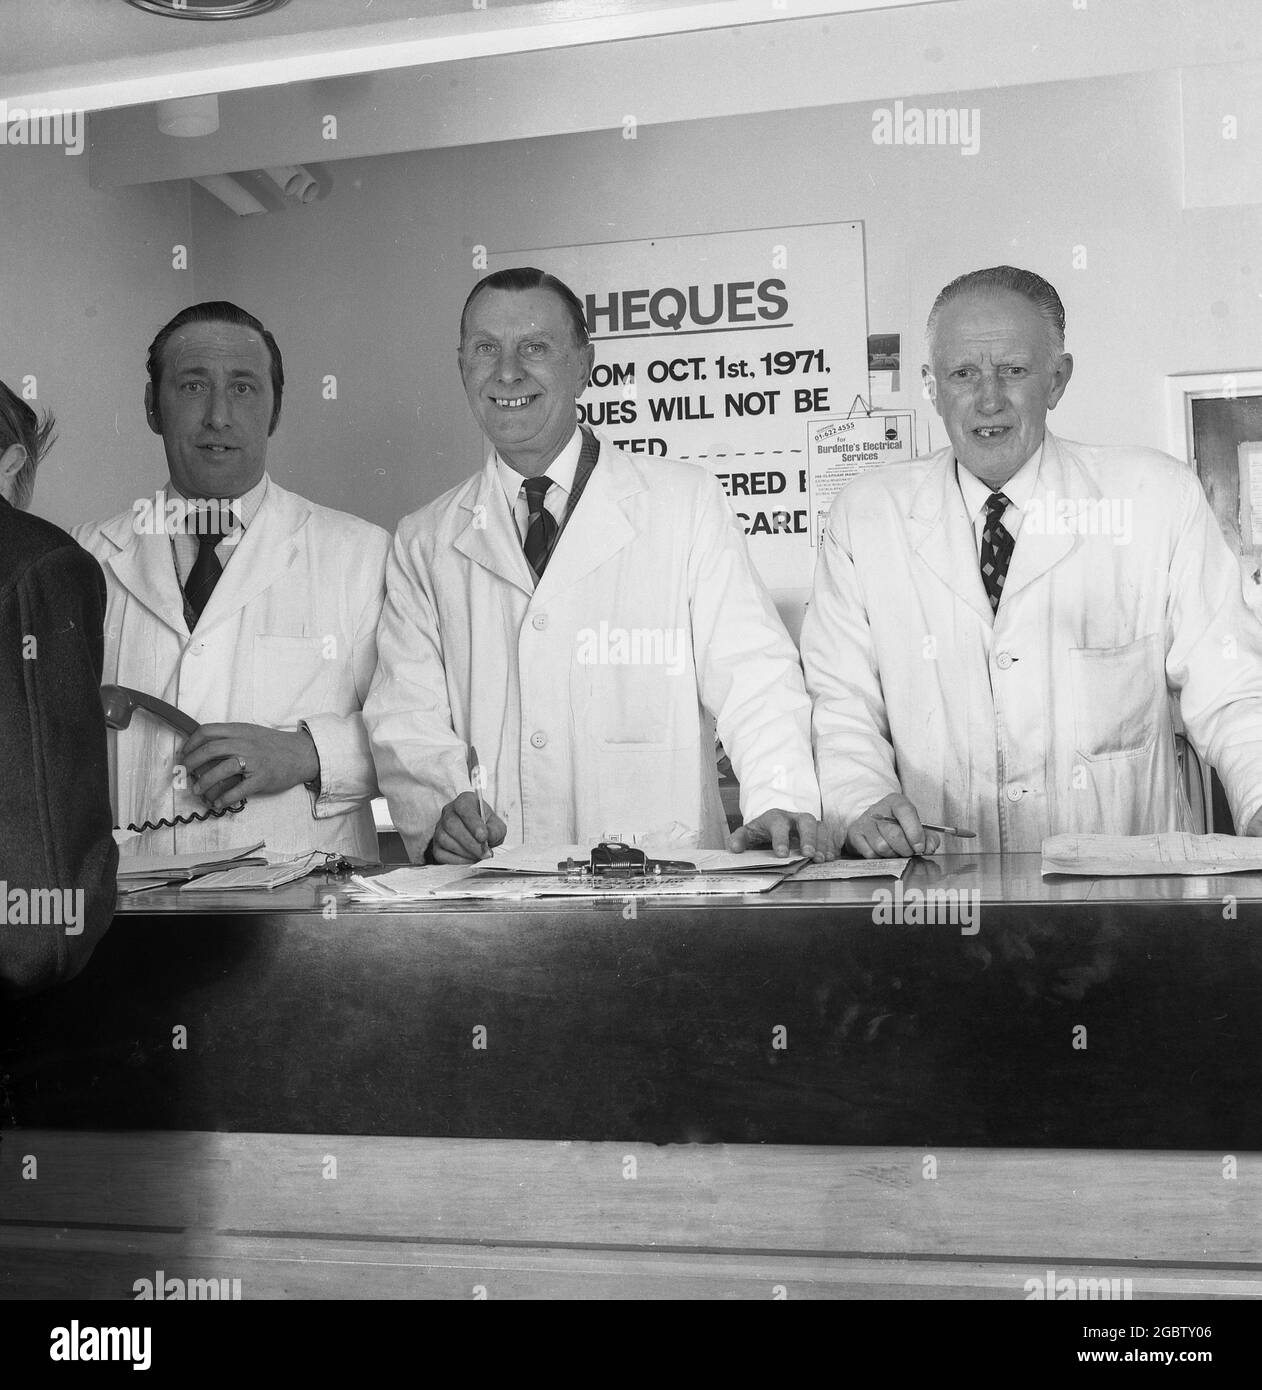 1975, historique, à la réception d'un service de voiture, trois cadres supérieurs en manteaux blancs se tiennent derrière le comptoir, Angleterre, Royaume-Uni. Banque D'Images